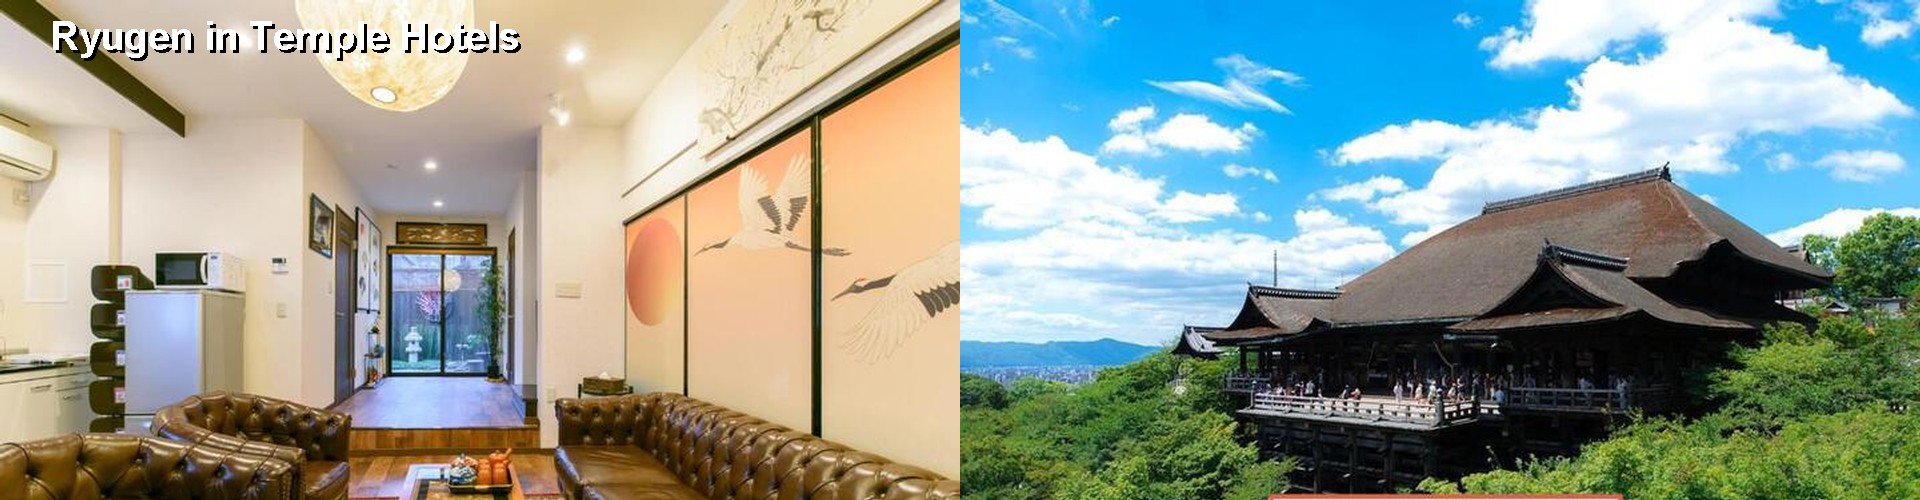 5 Best Hotels near Ryugen in Temple